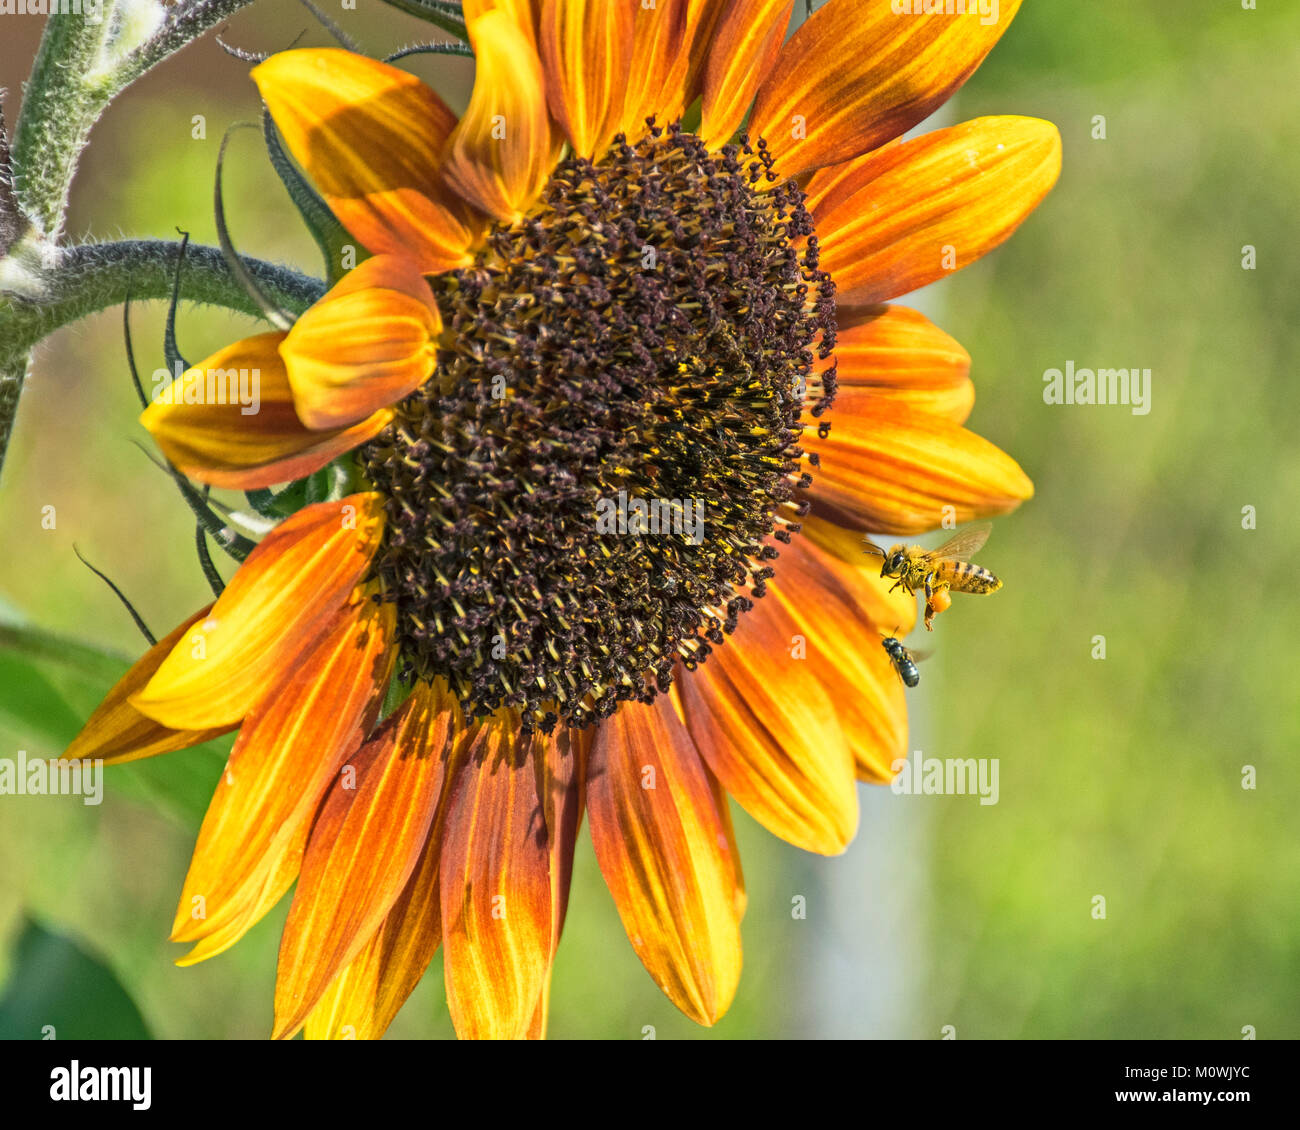 Eine Biene und kleine Gnatt schweben vor einem Große goldorange Sonnenblume mit einem verschwommenen Grün und Gelb Hintergrund Stockfoto